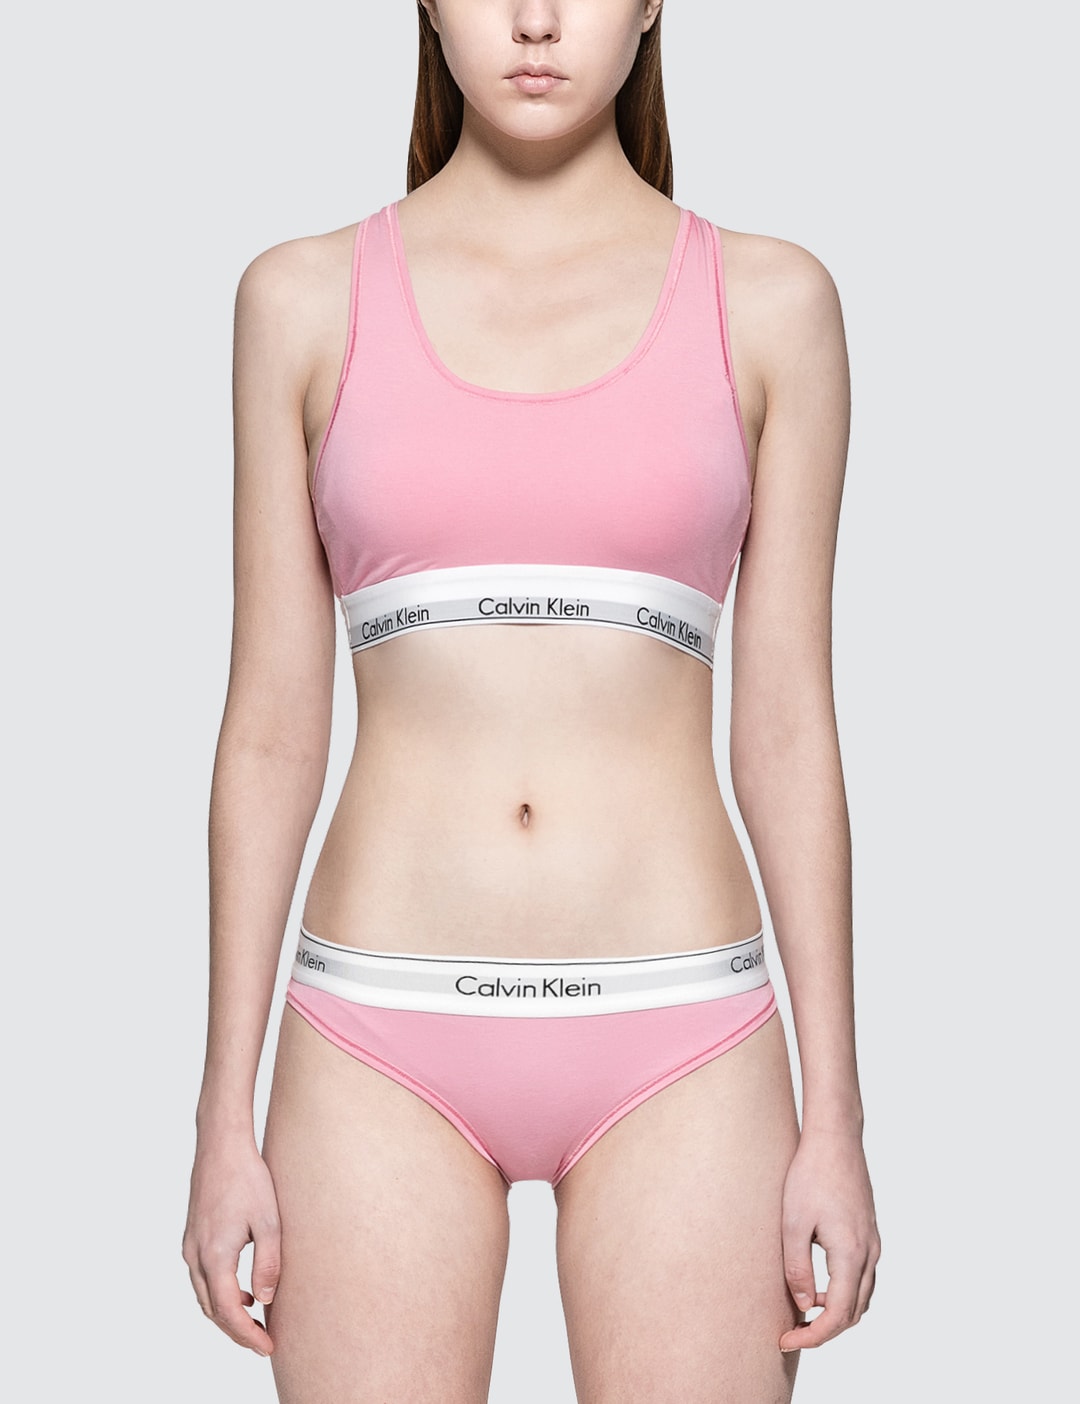 Calvin Klein Underwear - Bralette  HBX - Globally Curated Fashion